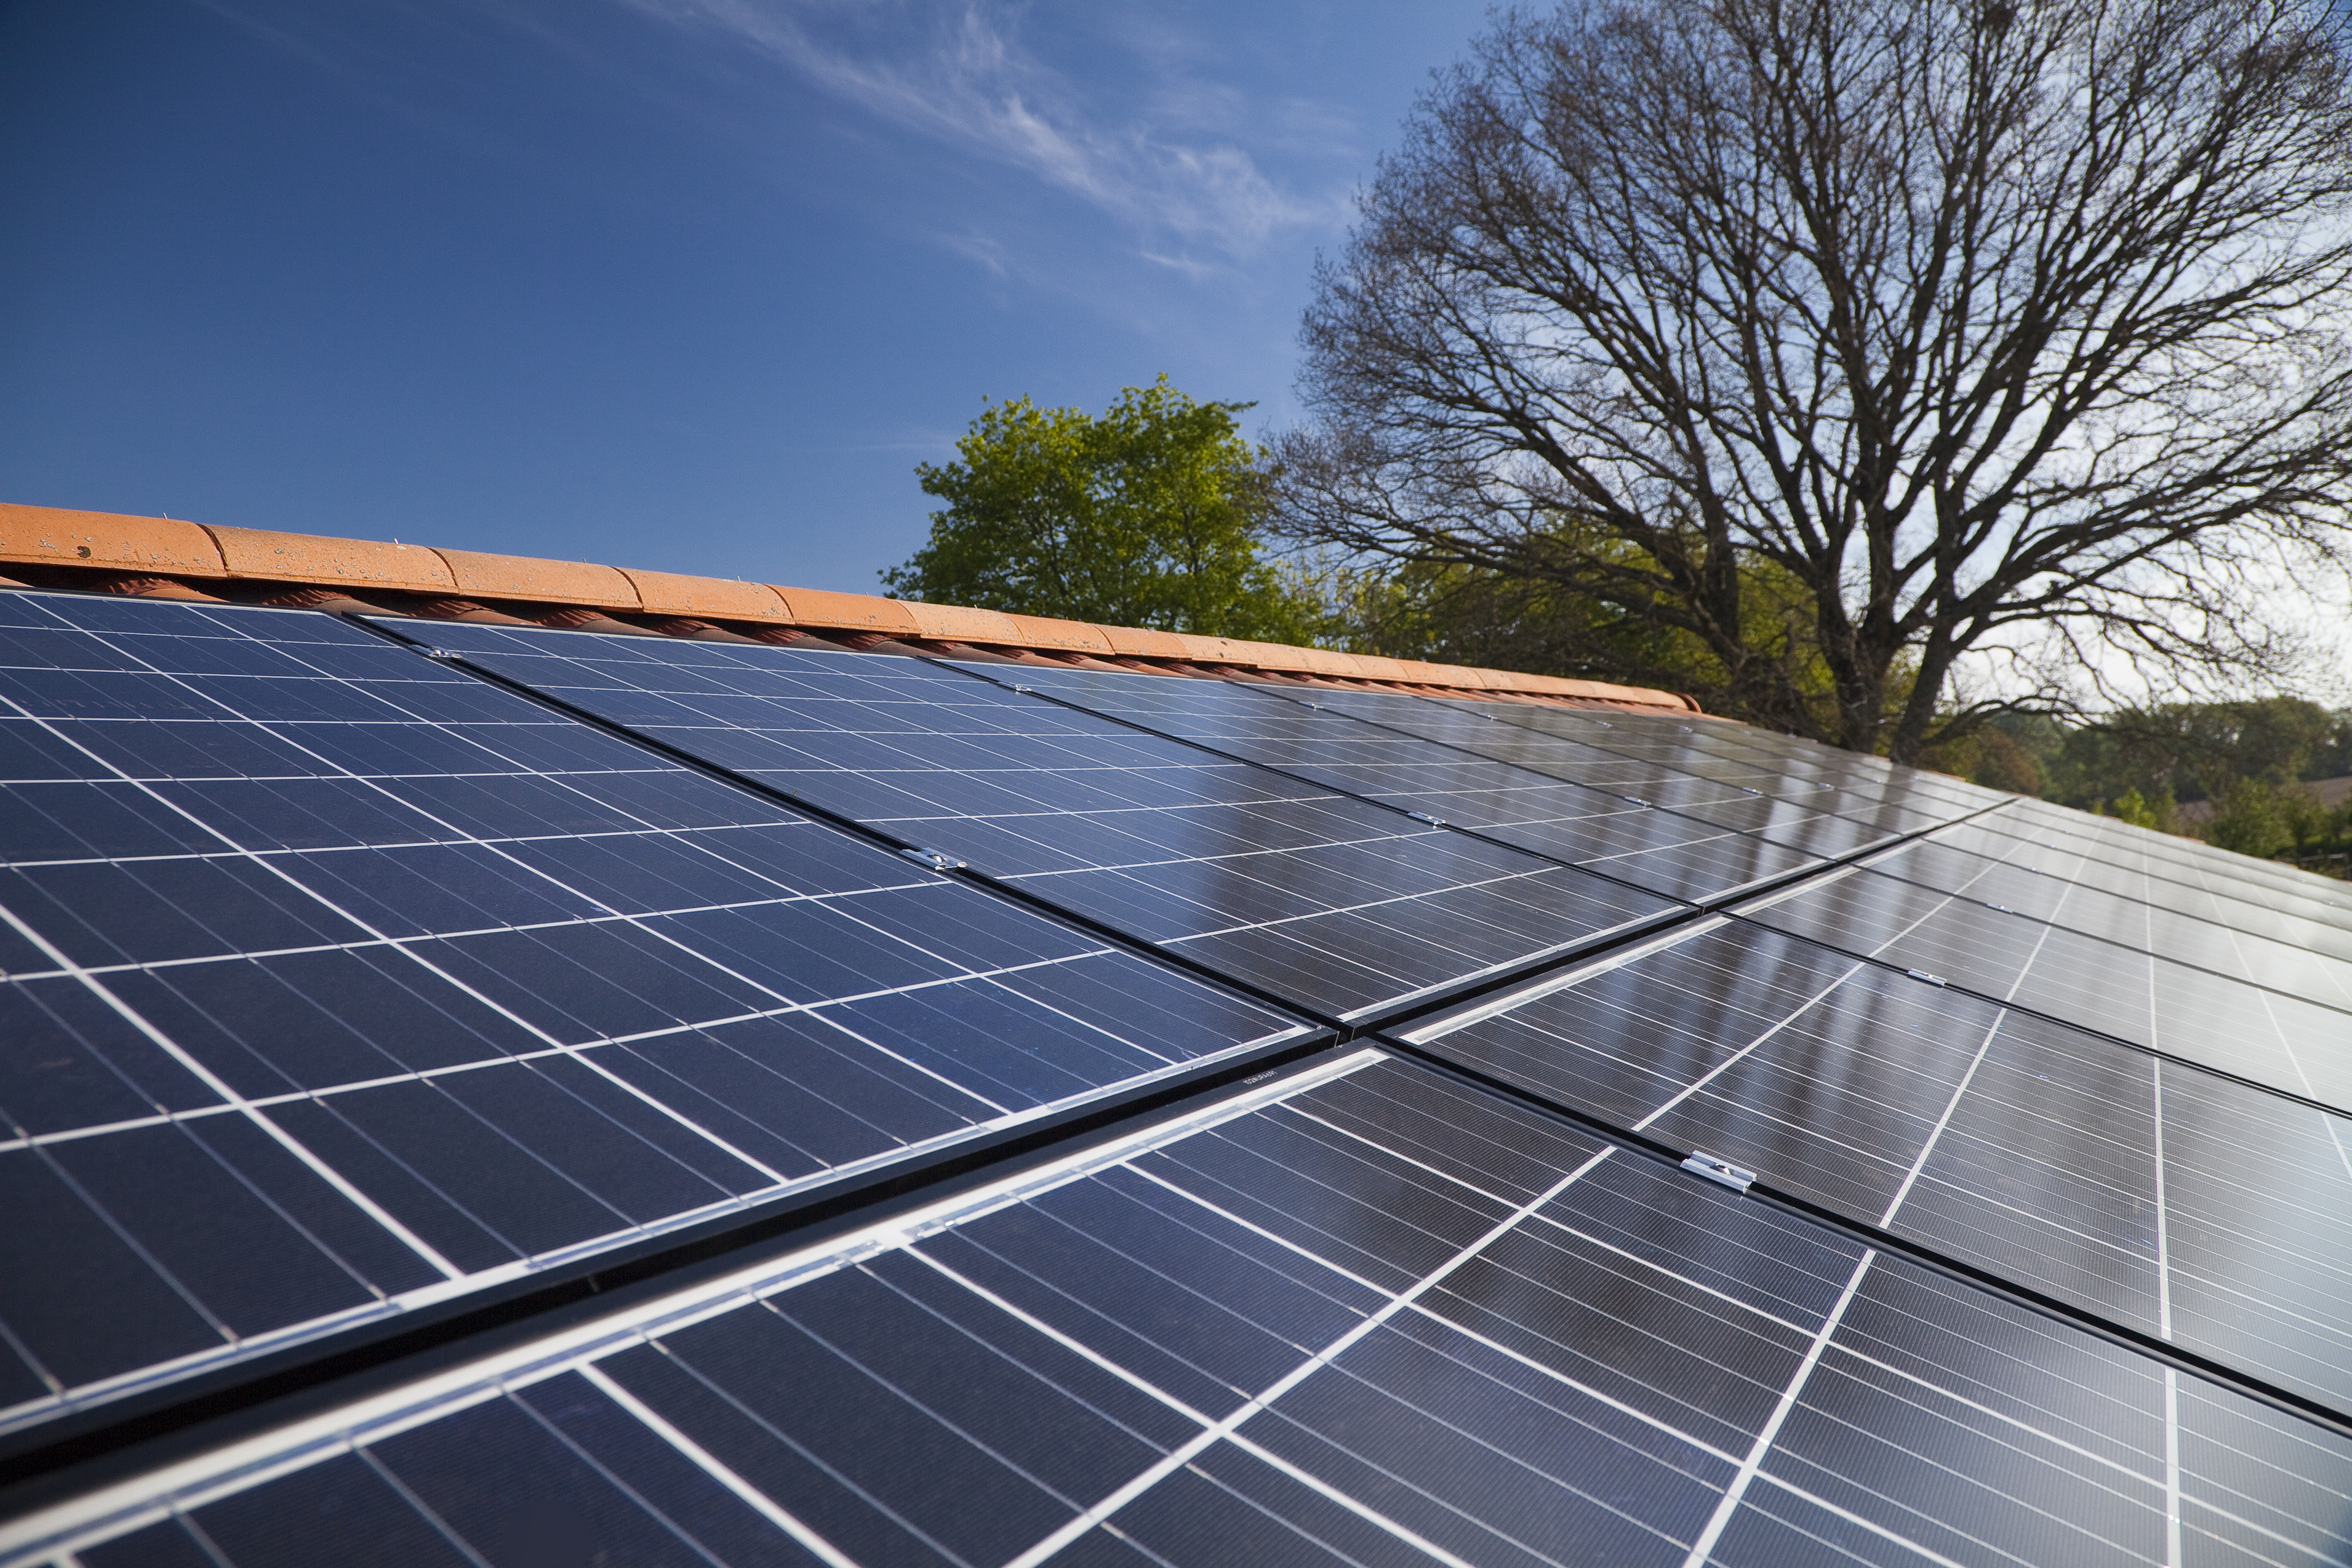 Équiper sa toiture de panneaux photovoltaïques est une bonne idée. Une démarche écologique qui a bien des avantages mais il faut s'assurer du sérieux de l'artisan pour éviter toute arnaque. © Steflemulot, Adobe Stock